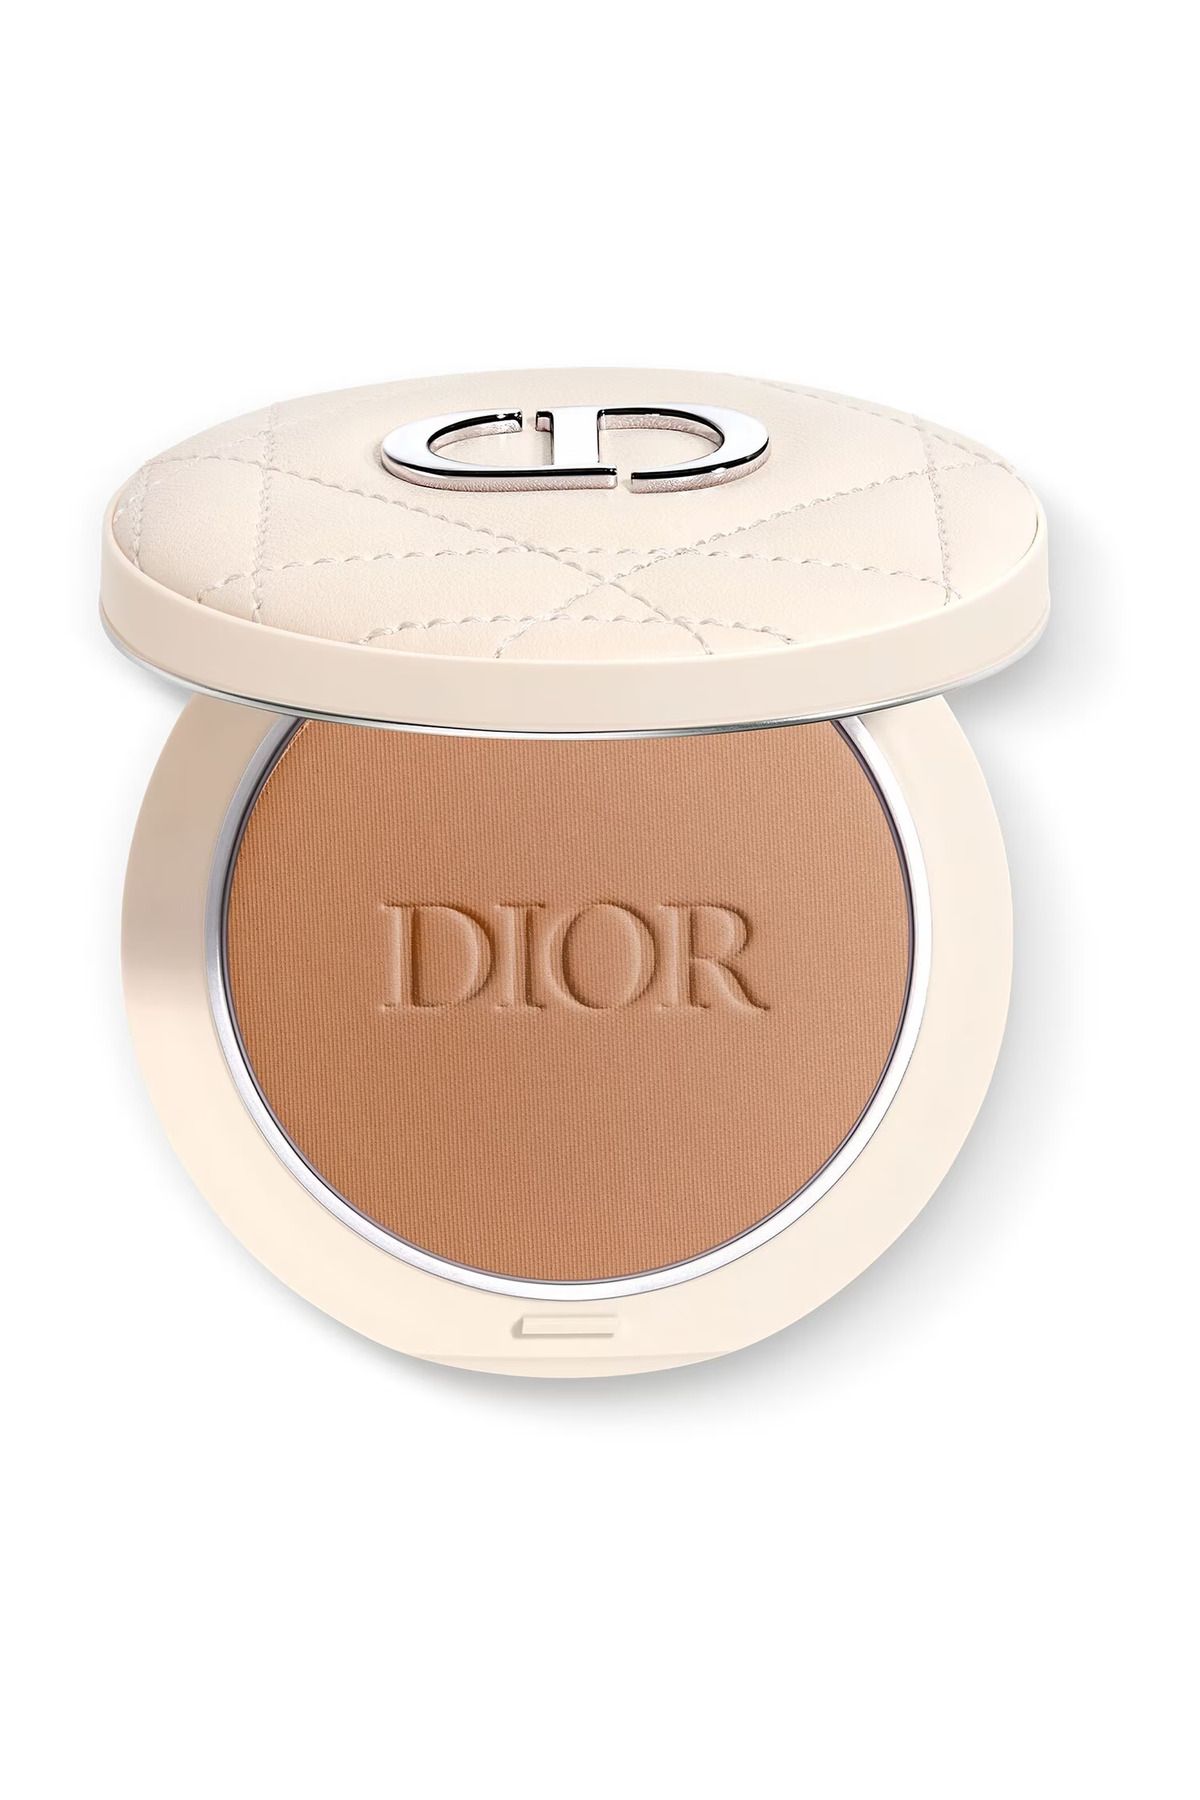 Dior - Bronzlaştırıcı Pudra - Dior Forever Natural Bronze - DIORSKIN FOREVER BRONZER POWDER 005